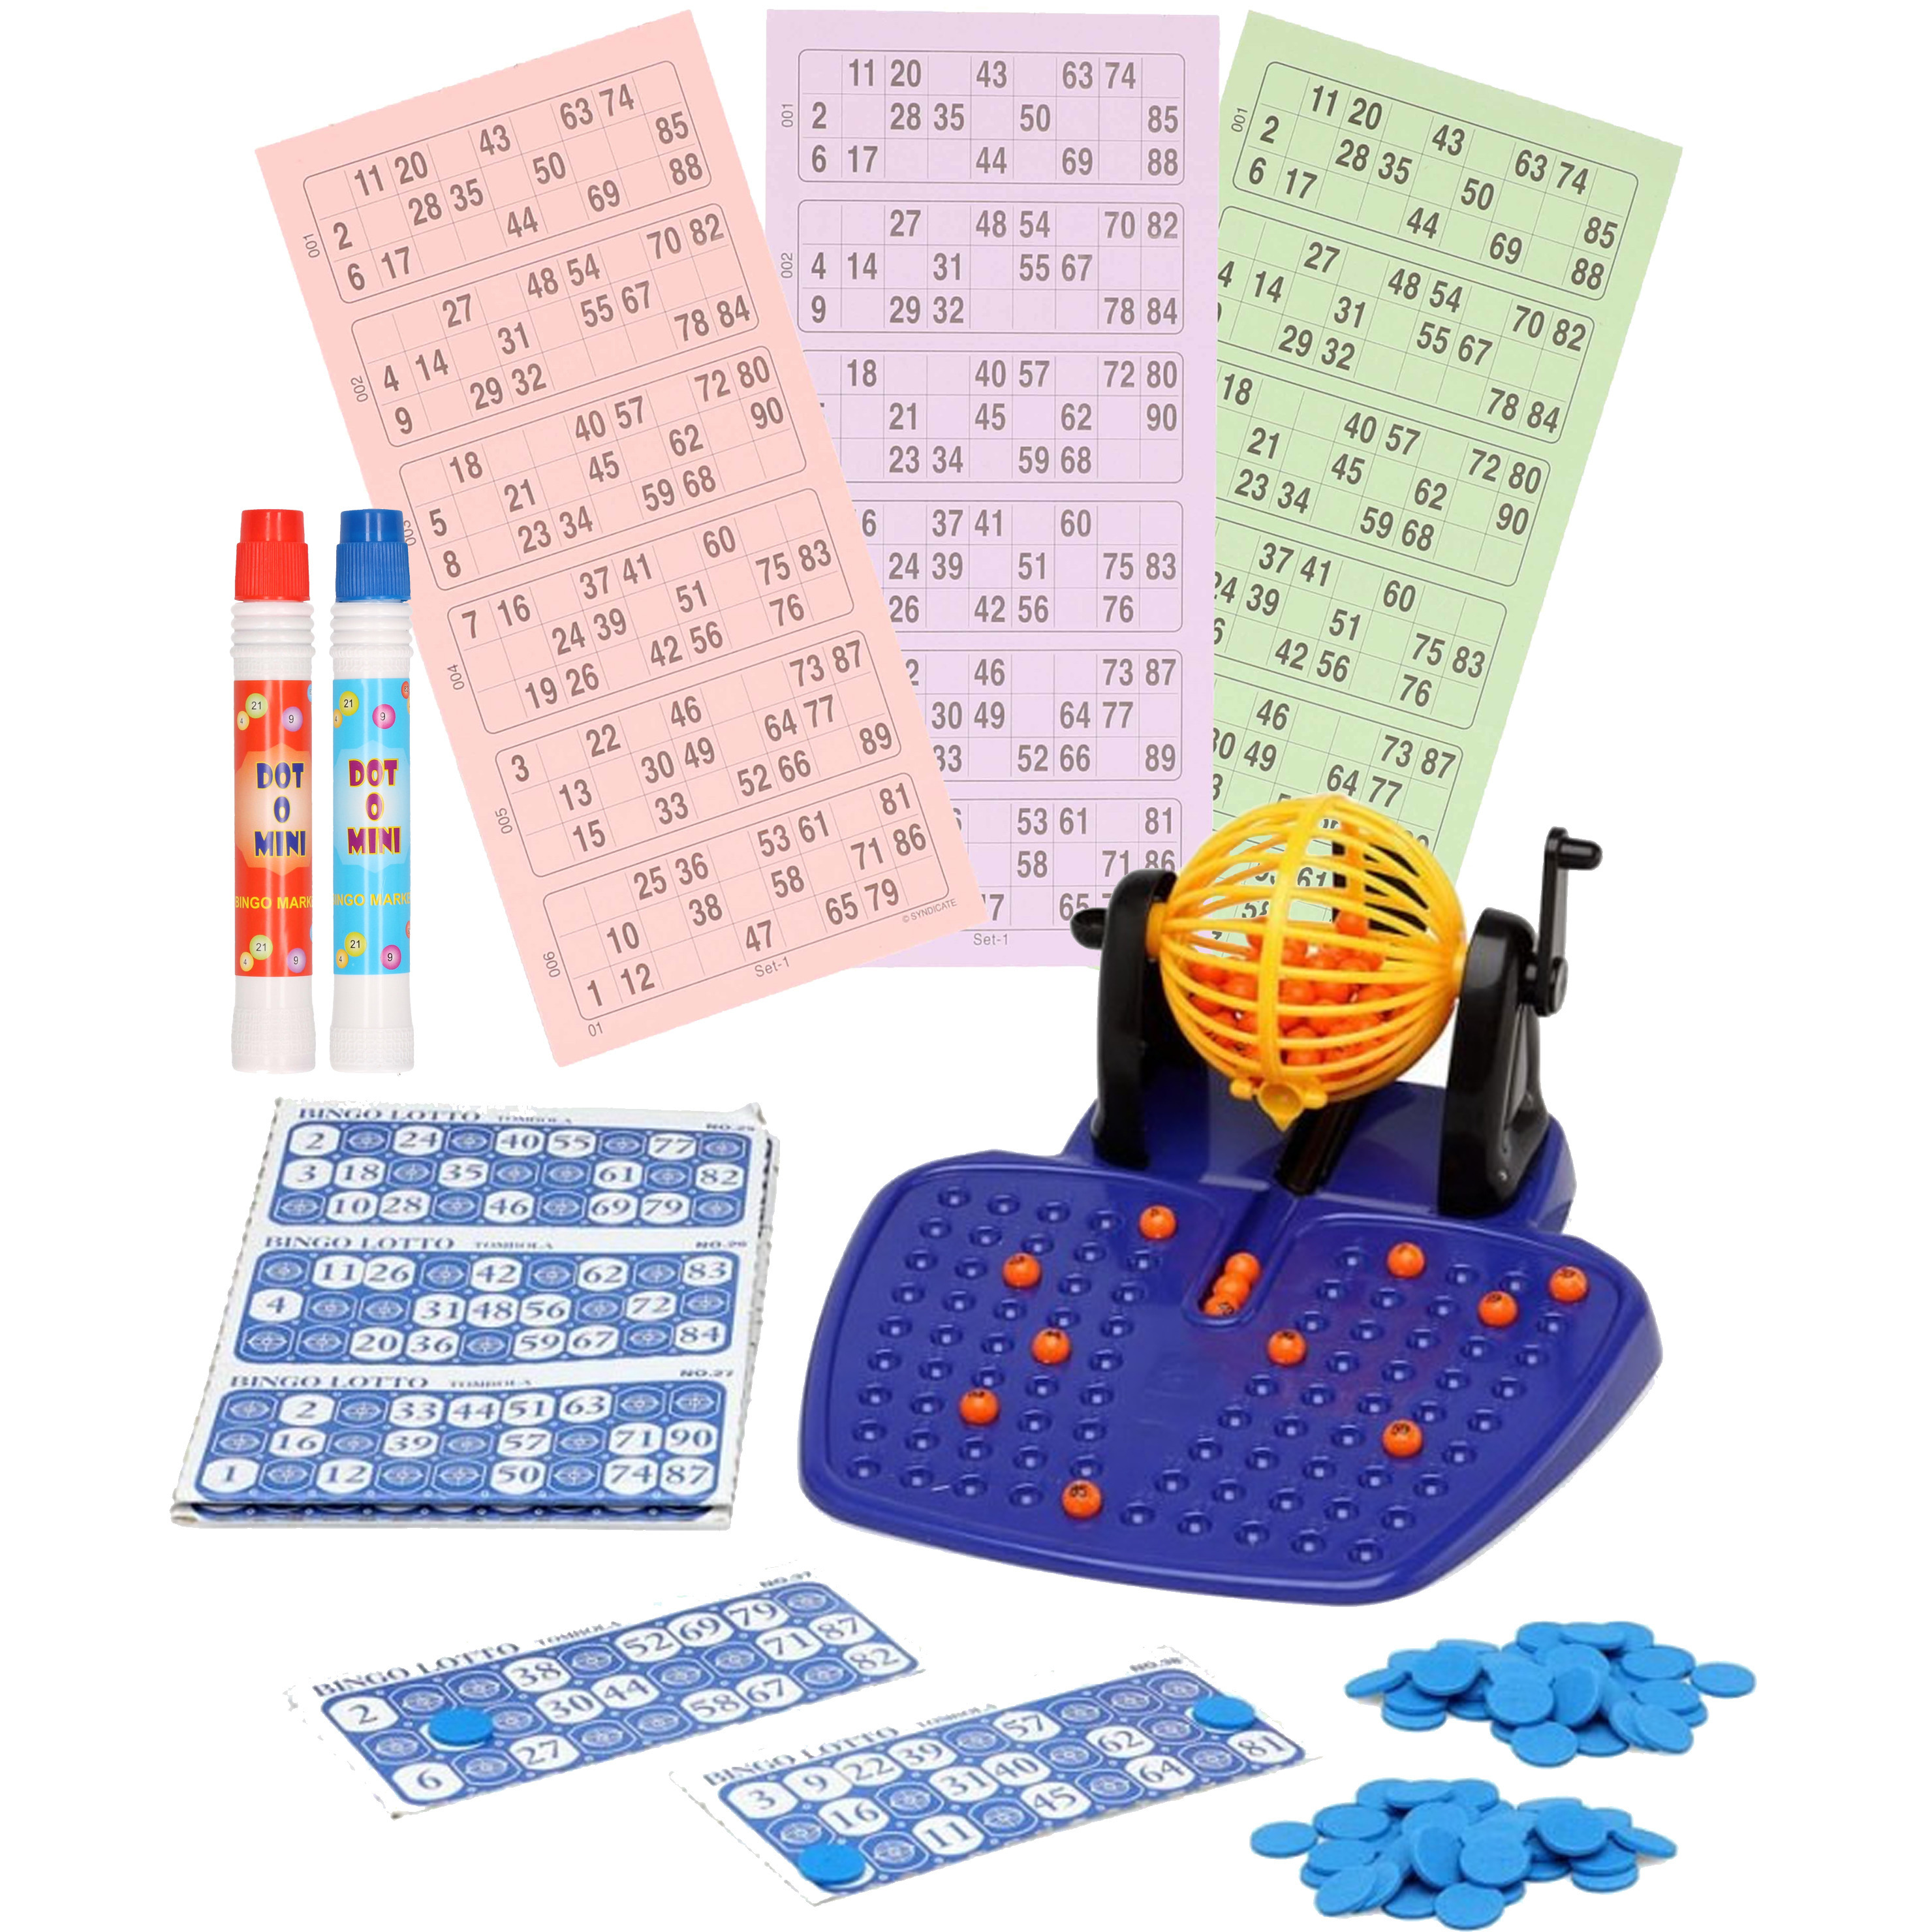 Bingo spel gekleurd-oranje complete set nummers 1-90 met molen-148x bingokaarten-2x stiften